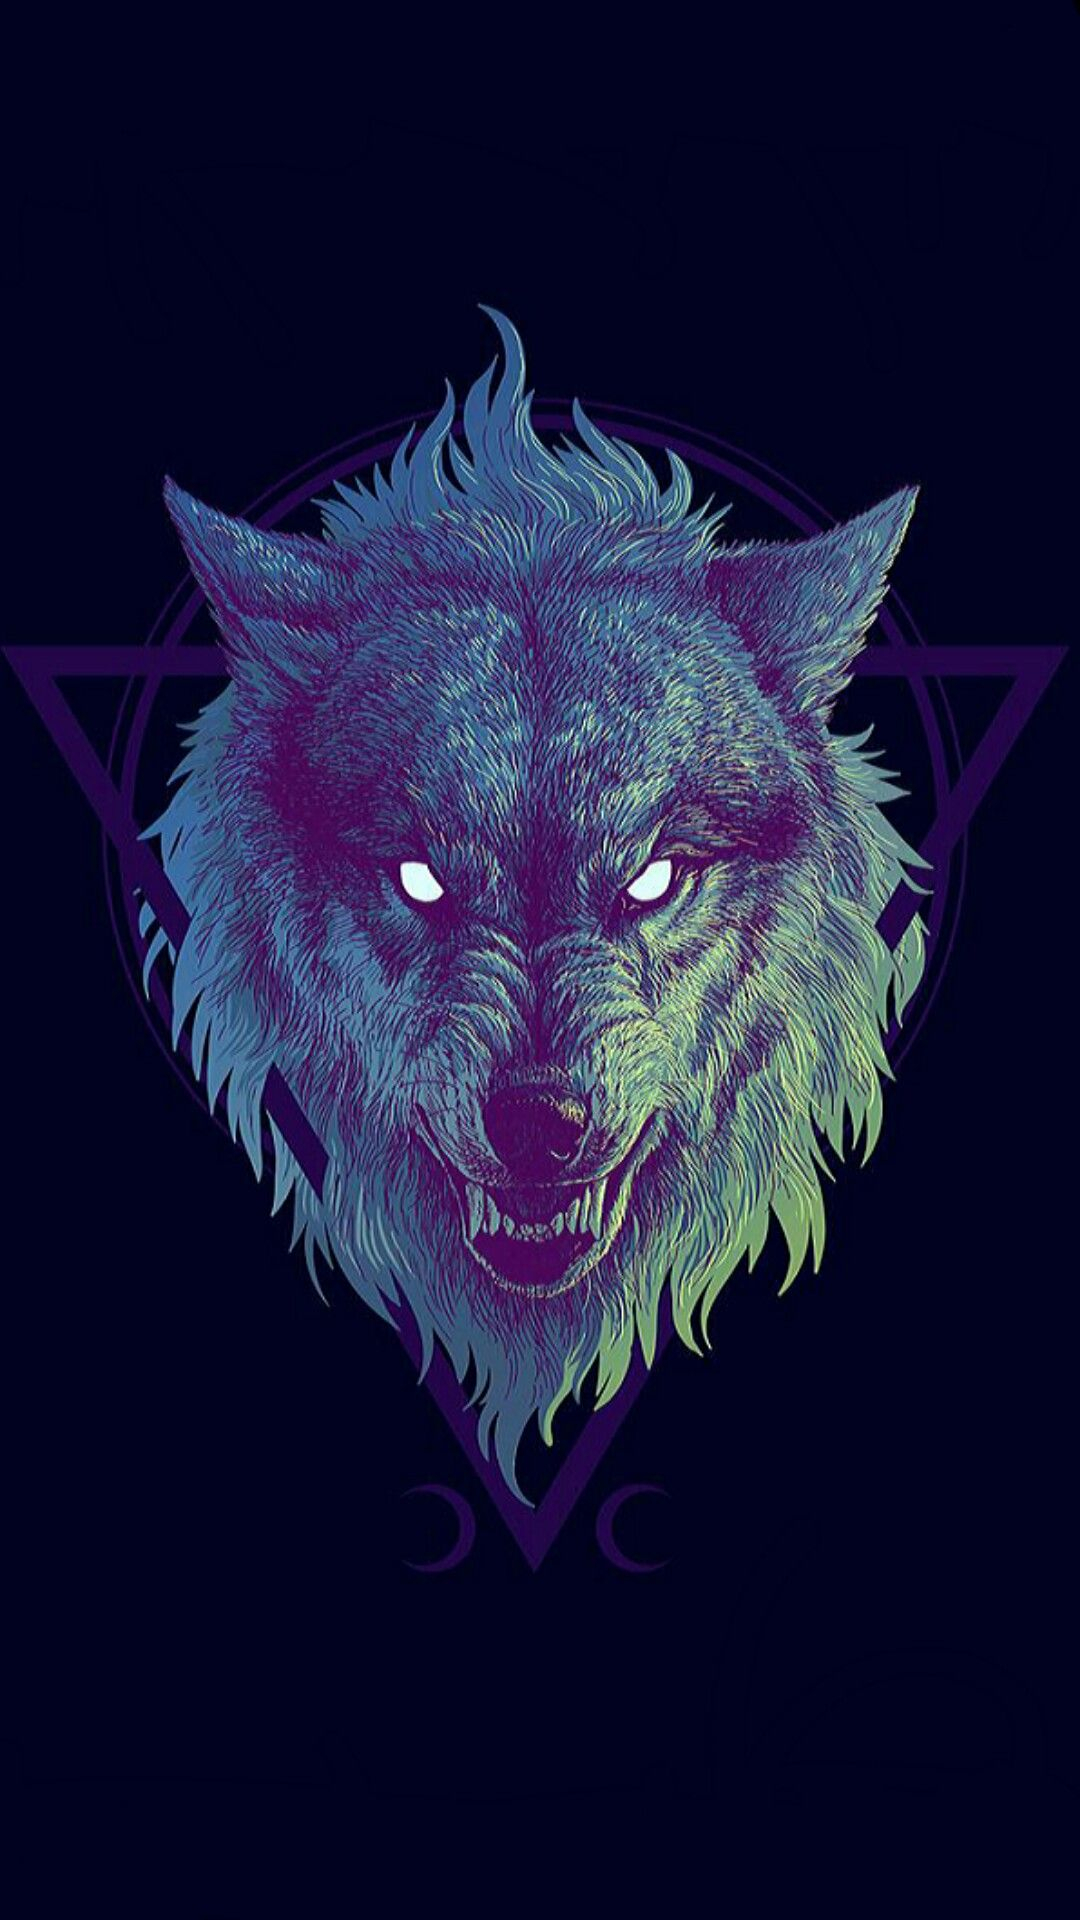 1080x1920 What a great picture | Werewolf art, Wolf tattoo design, Wolf art